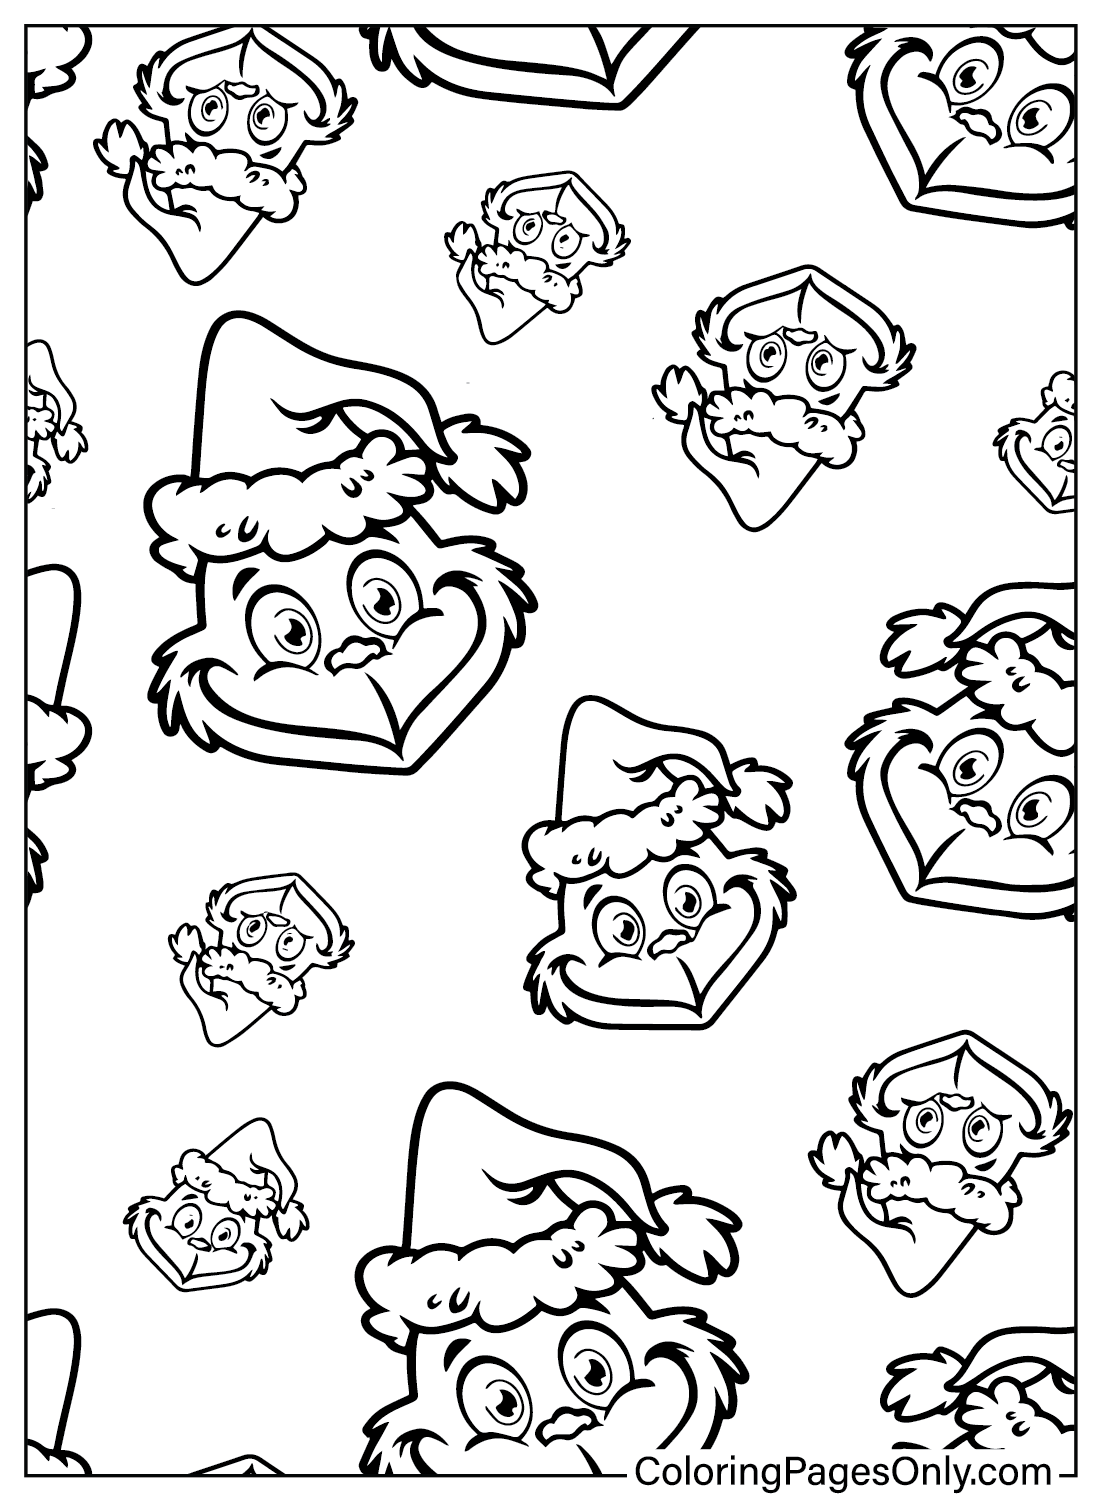 Página para colorir com padrão Grinch do Grinch